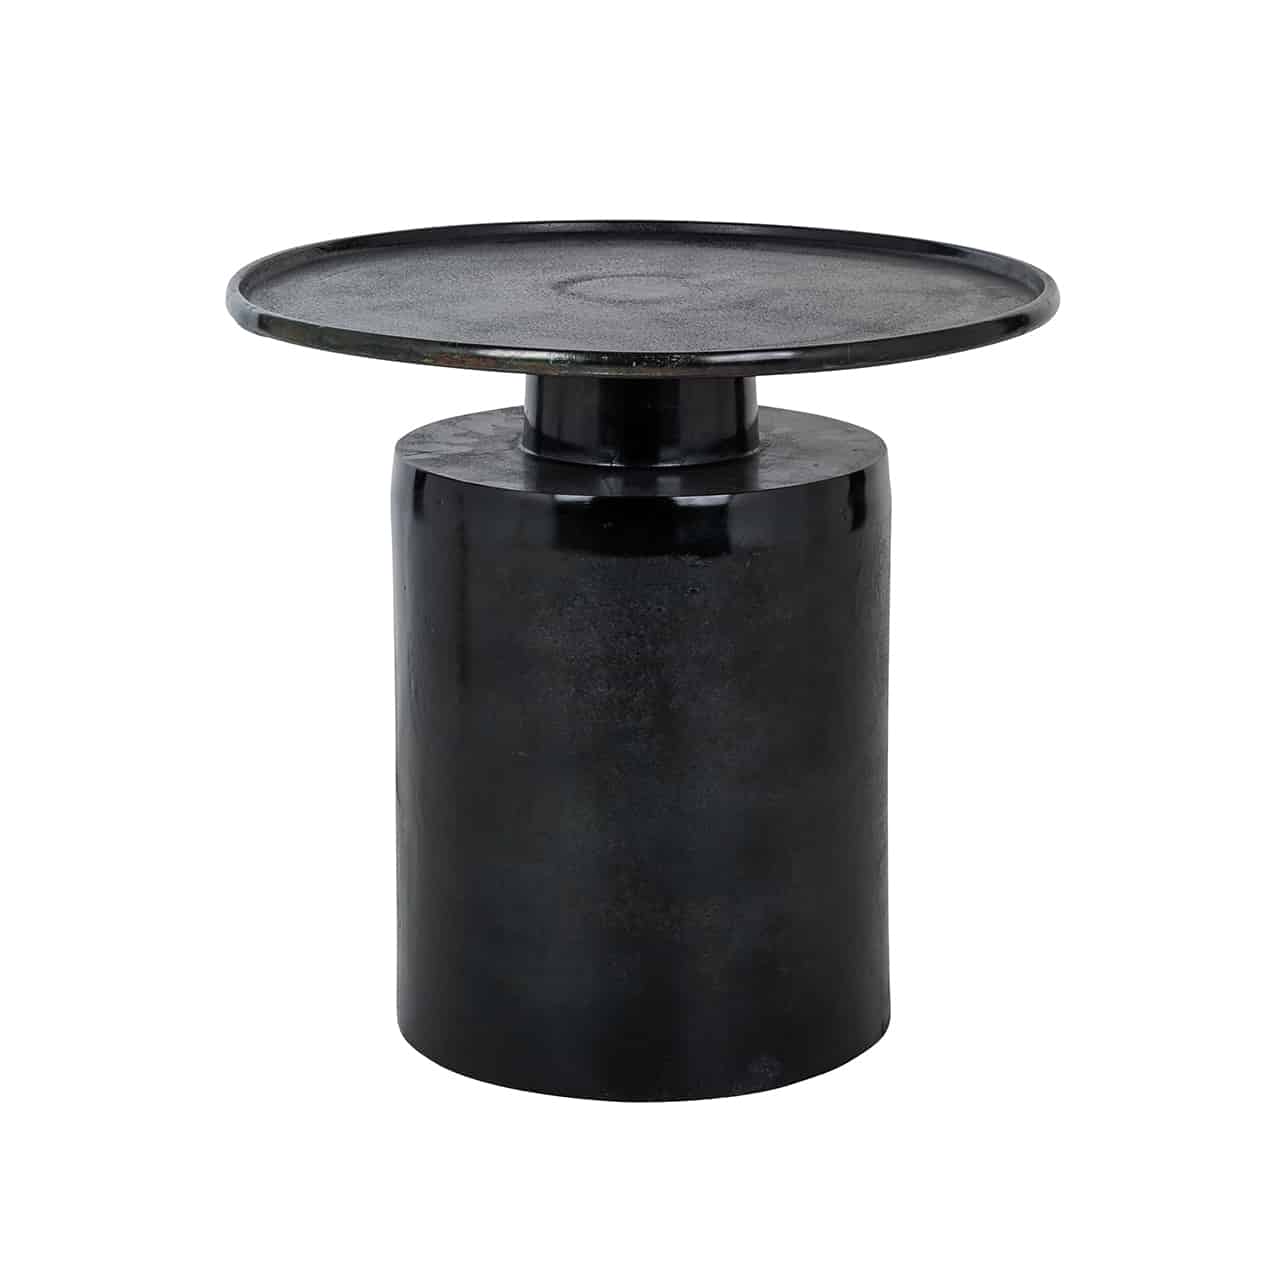 Beistelltisch schwarz glänzend, bestehend aus einem zylinderförmigen Fuß, darauf ein kleiner runder Sockel, mit einer runden Tischplatte mit kleinem Rand.